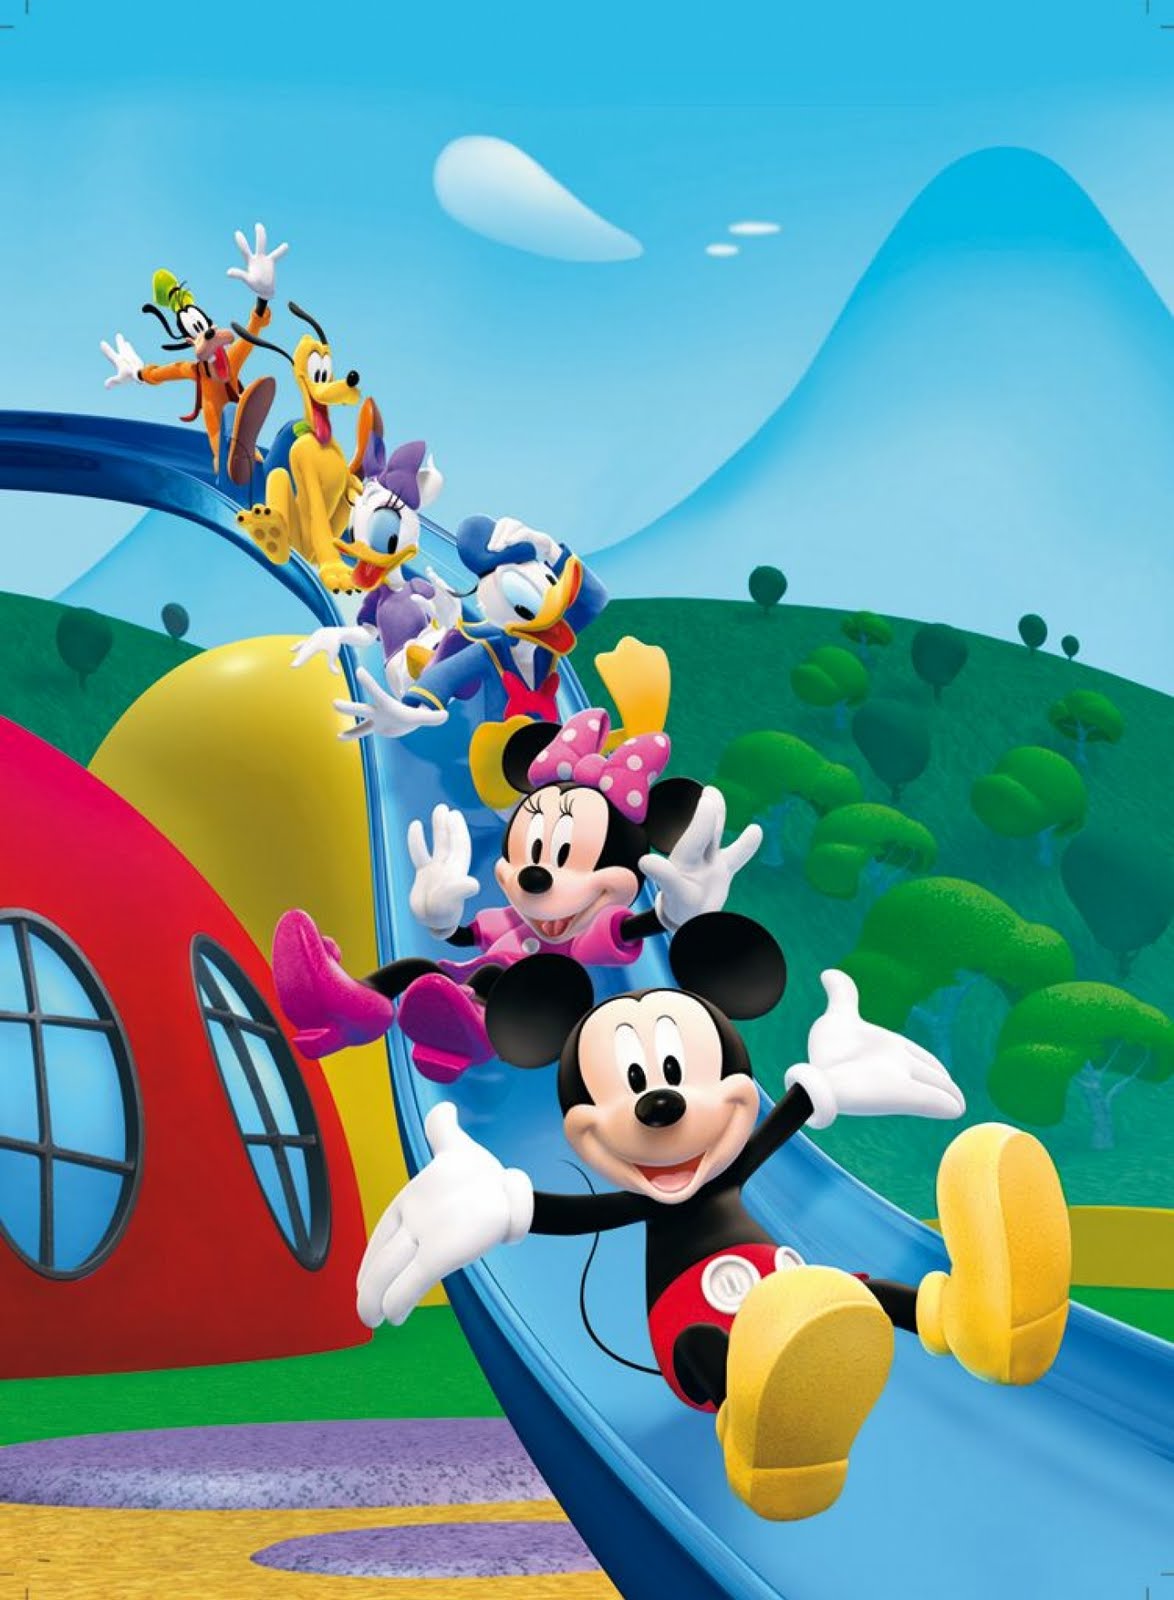 미키 마우스 클럽 하우스 배경,만화 영화,만화,장난,생기,삽화